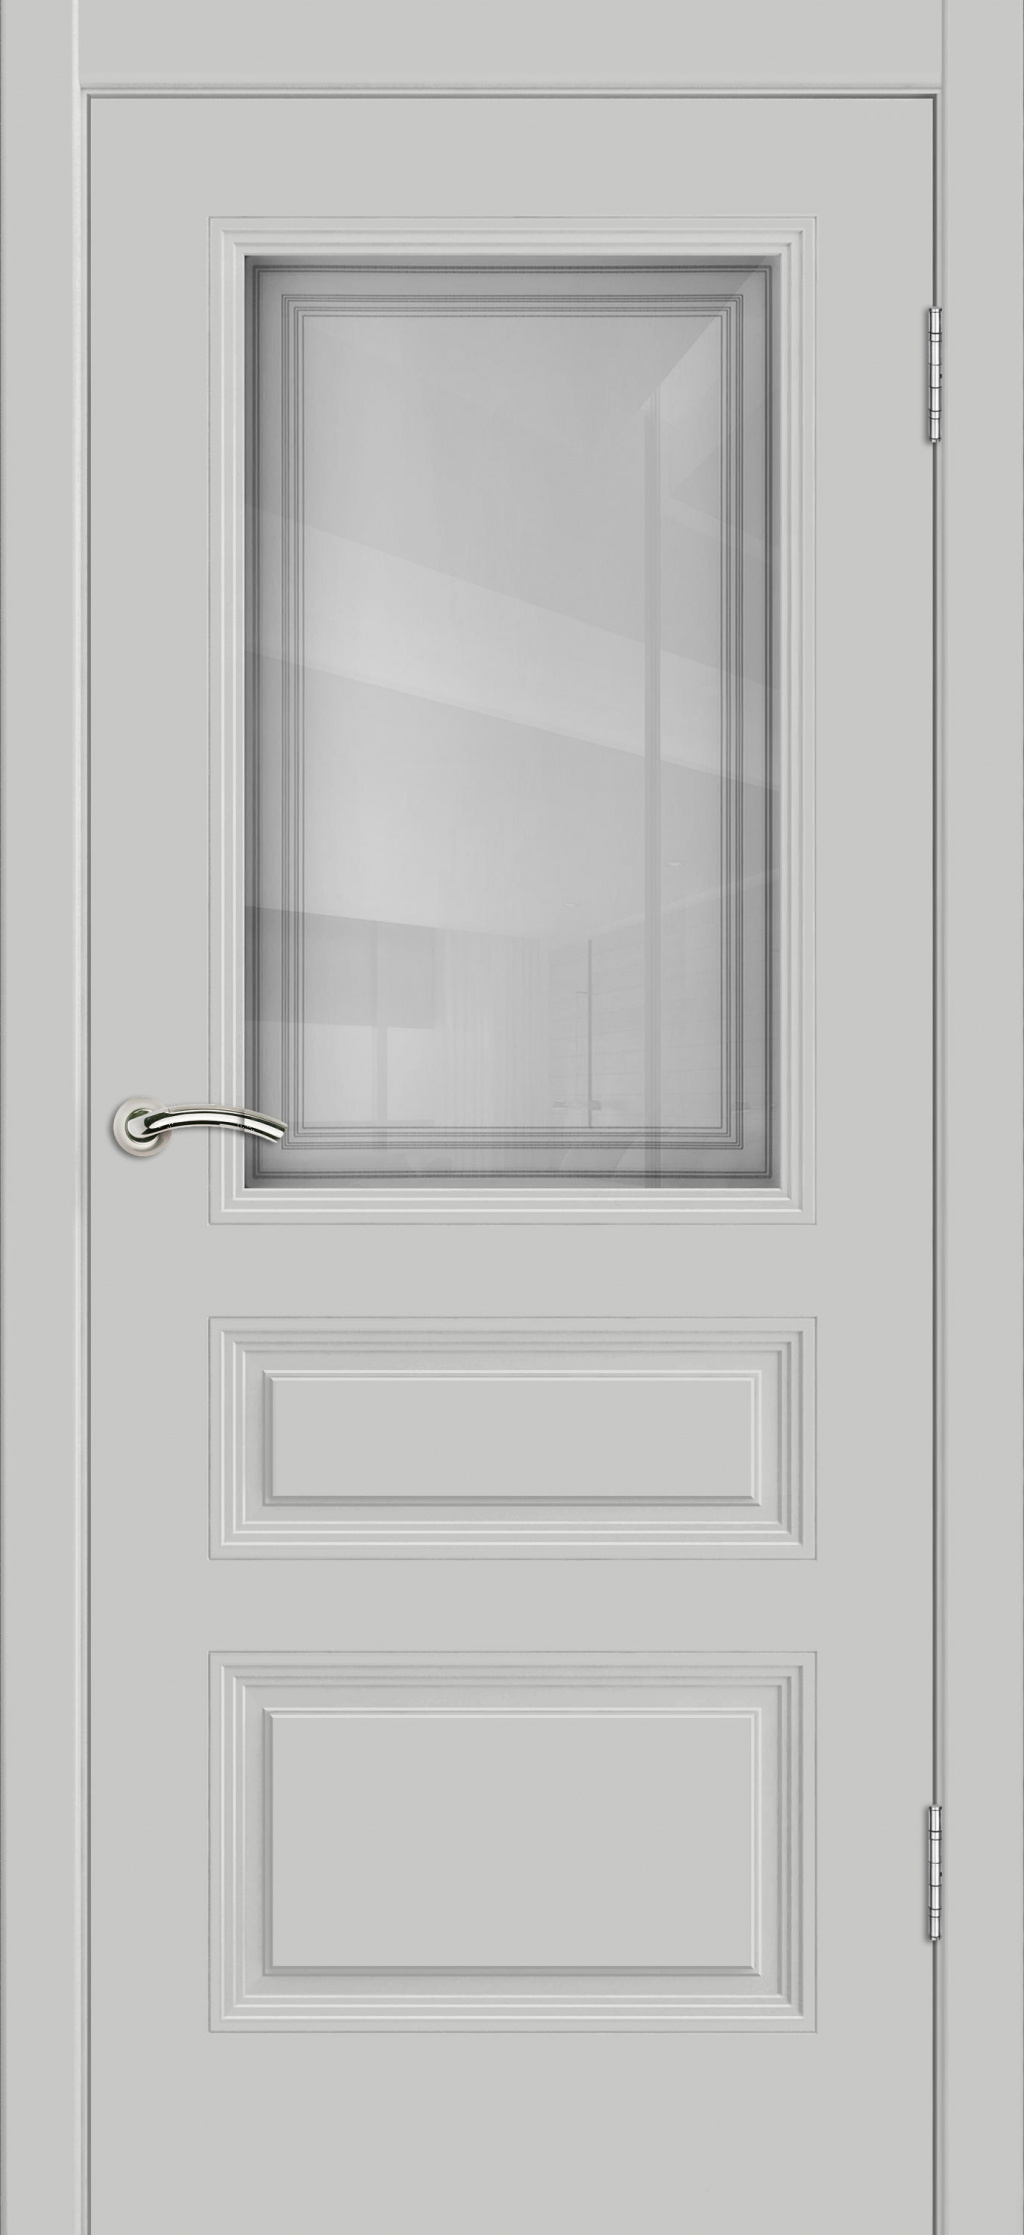 Cordondoor Межкомнатная дверь Vision 5 ПО Узор 1-1, арт. 25678 - фото №3